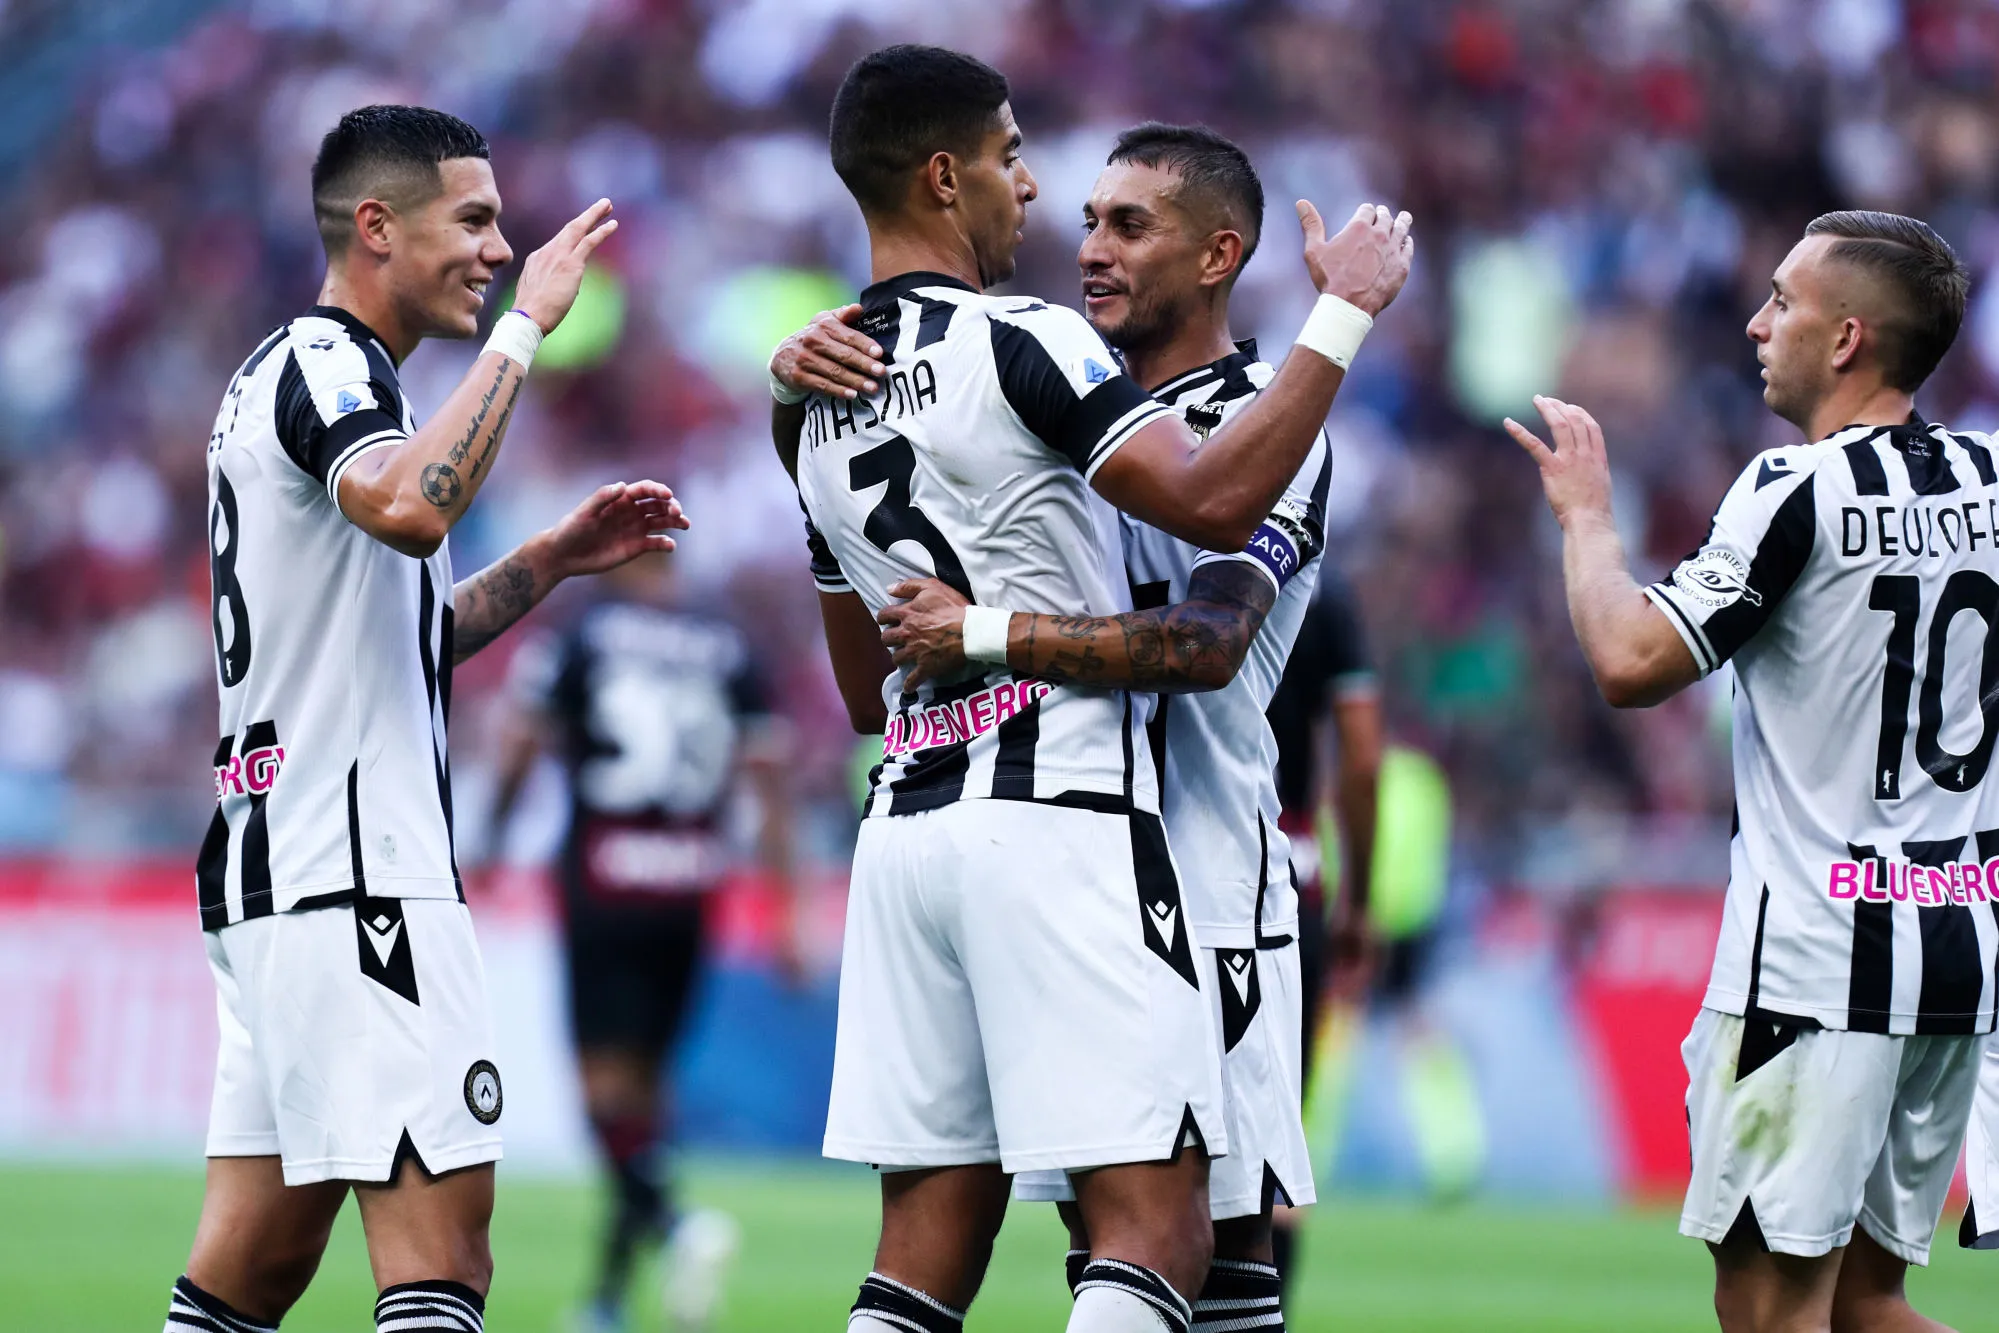 Pronostic Udinese Lecce : Analyse, cotes et prono du match de Serie A